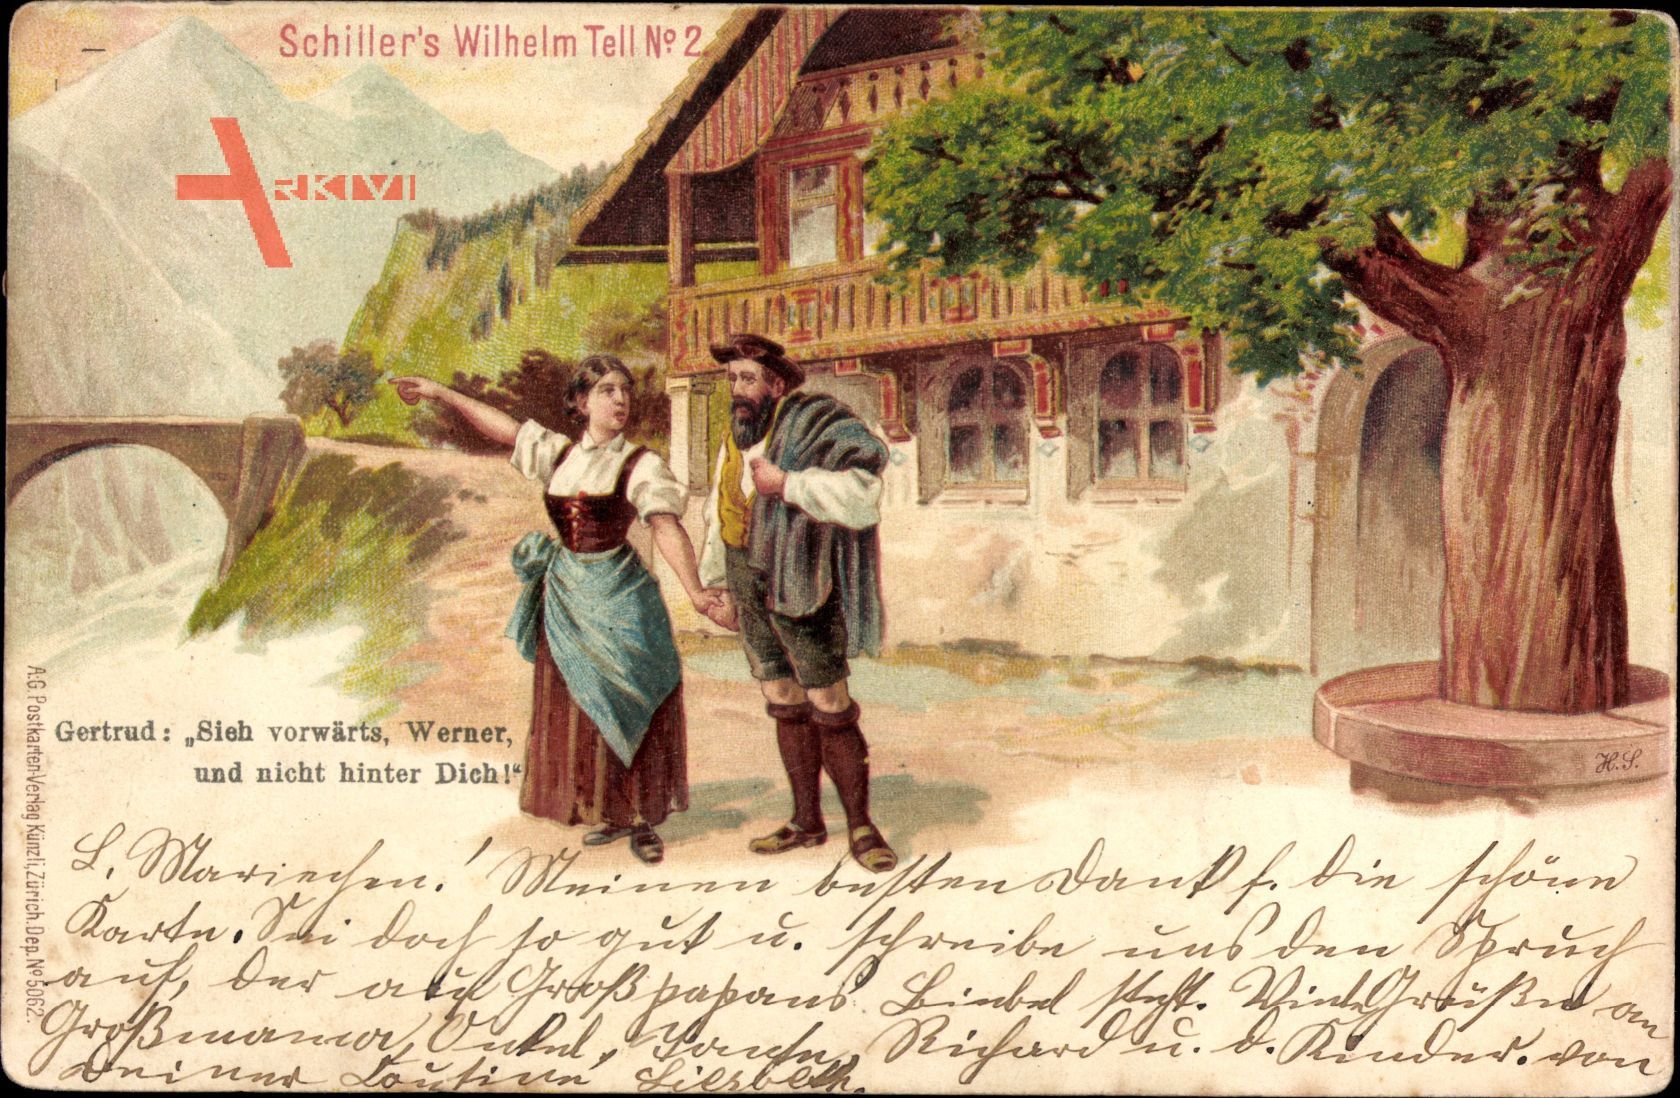 Schillers Wilhelm Tell, Gertrud, Sieh vorwärts, Werner